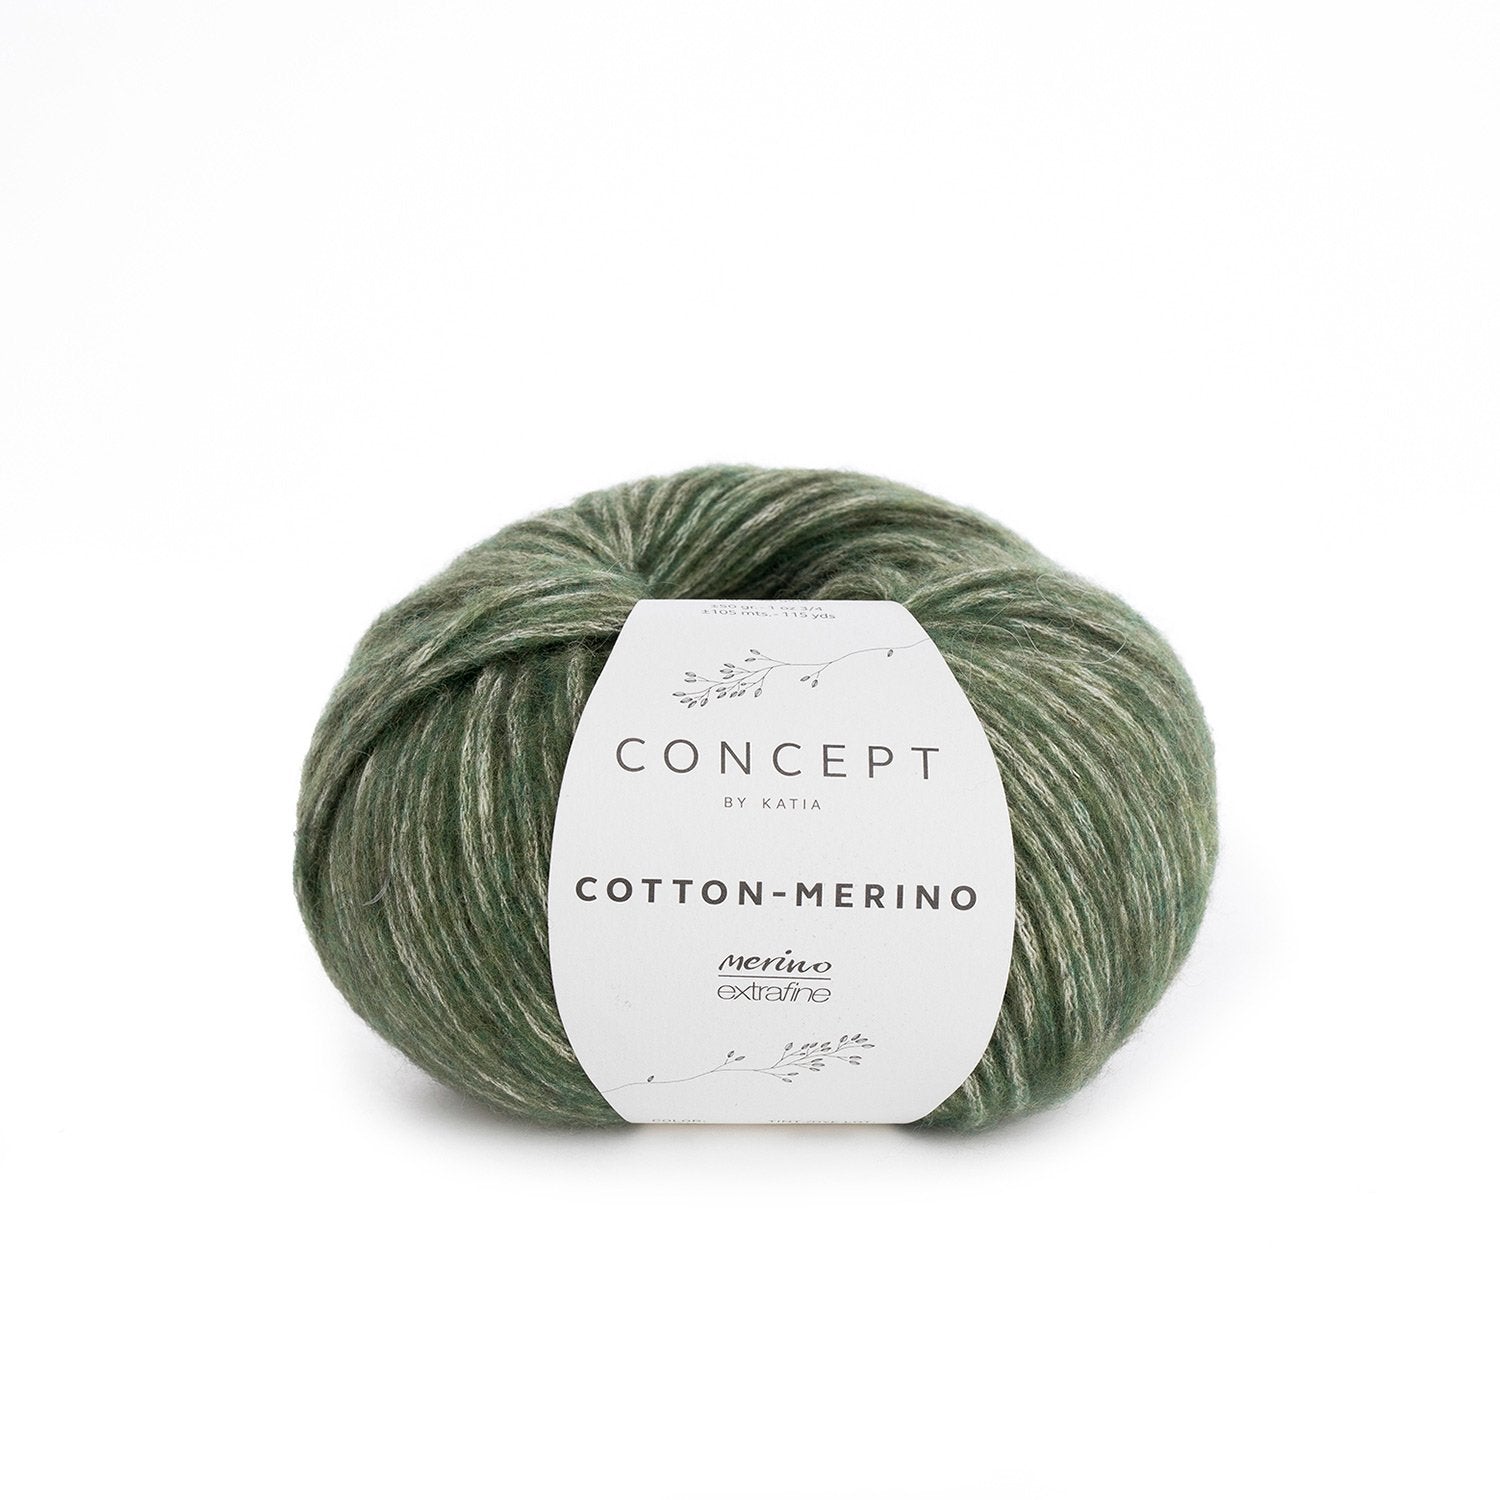 London Beanie Crochet Kit - Justine Walley - 122 Pale Green - The Little Yarn Store